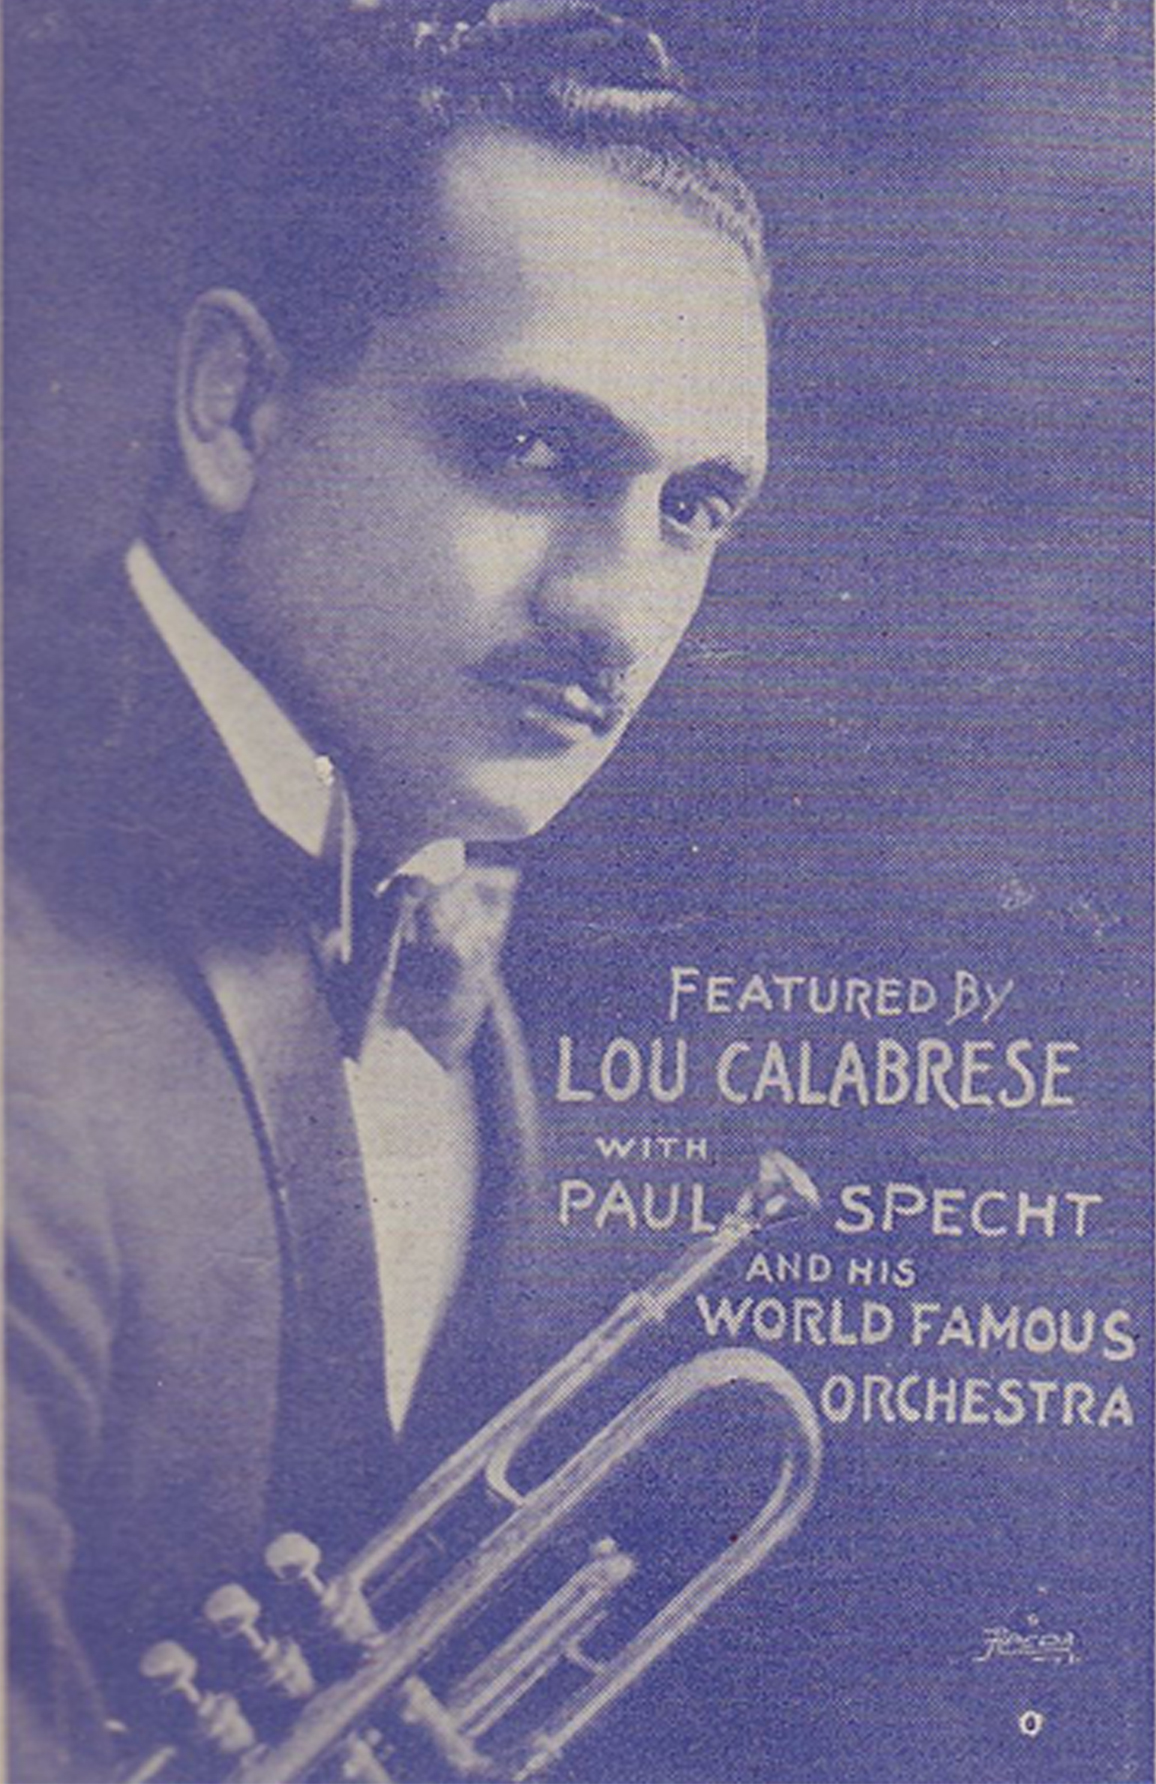 Lou Calabrese (1927)